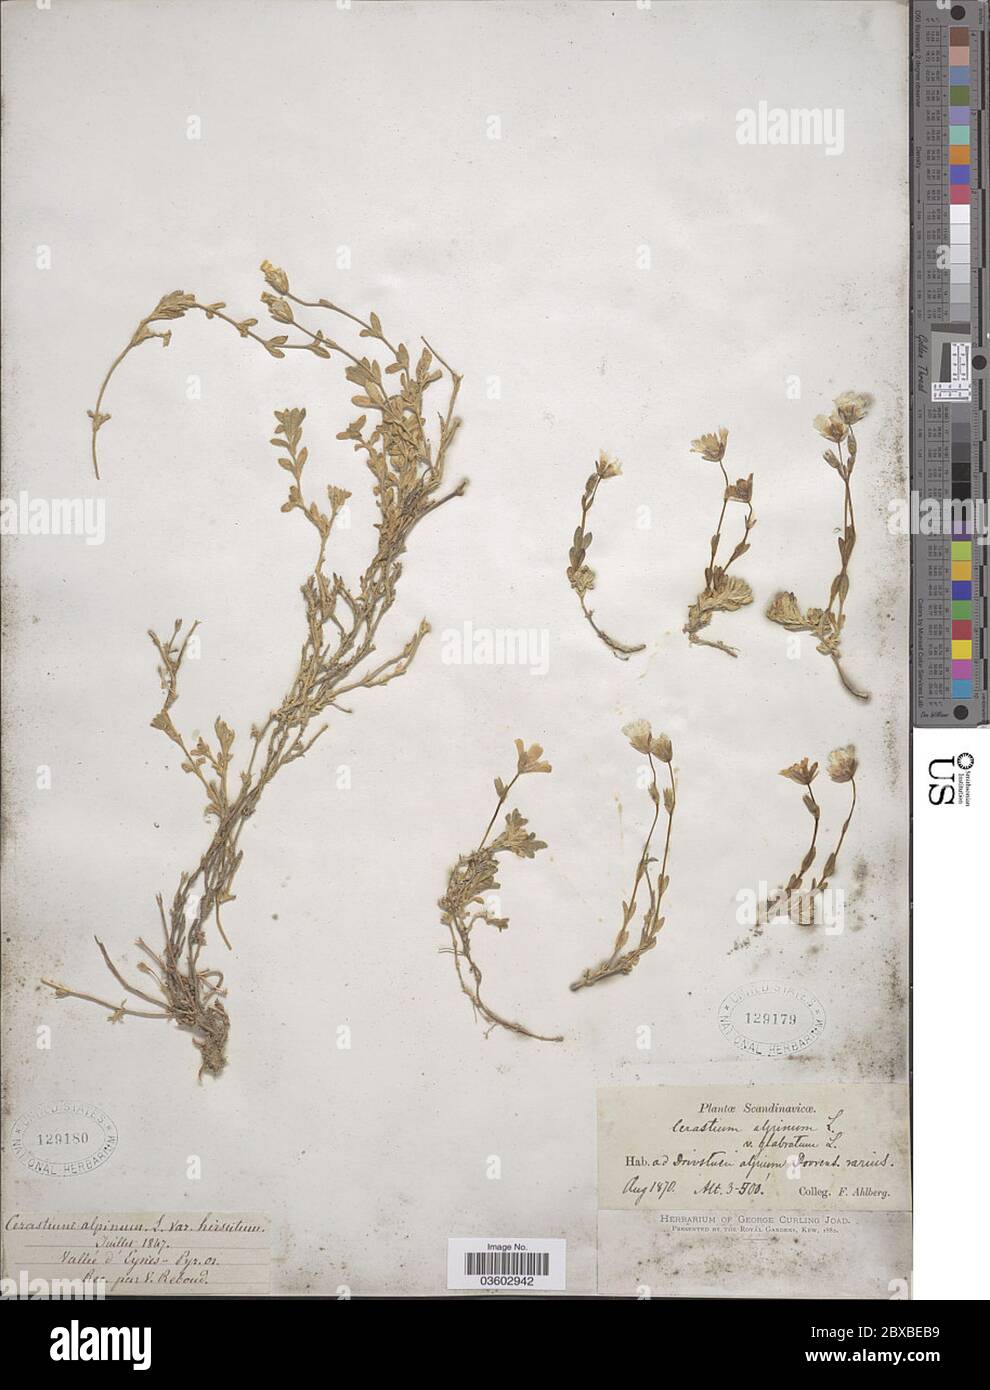 Cerastium alpinum L Cerastium alpinum L. Stock Photo